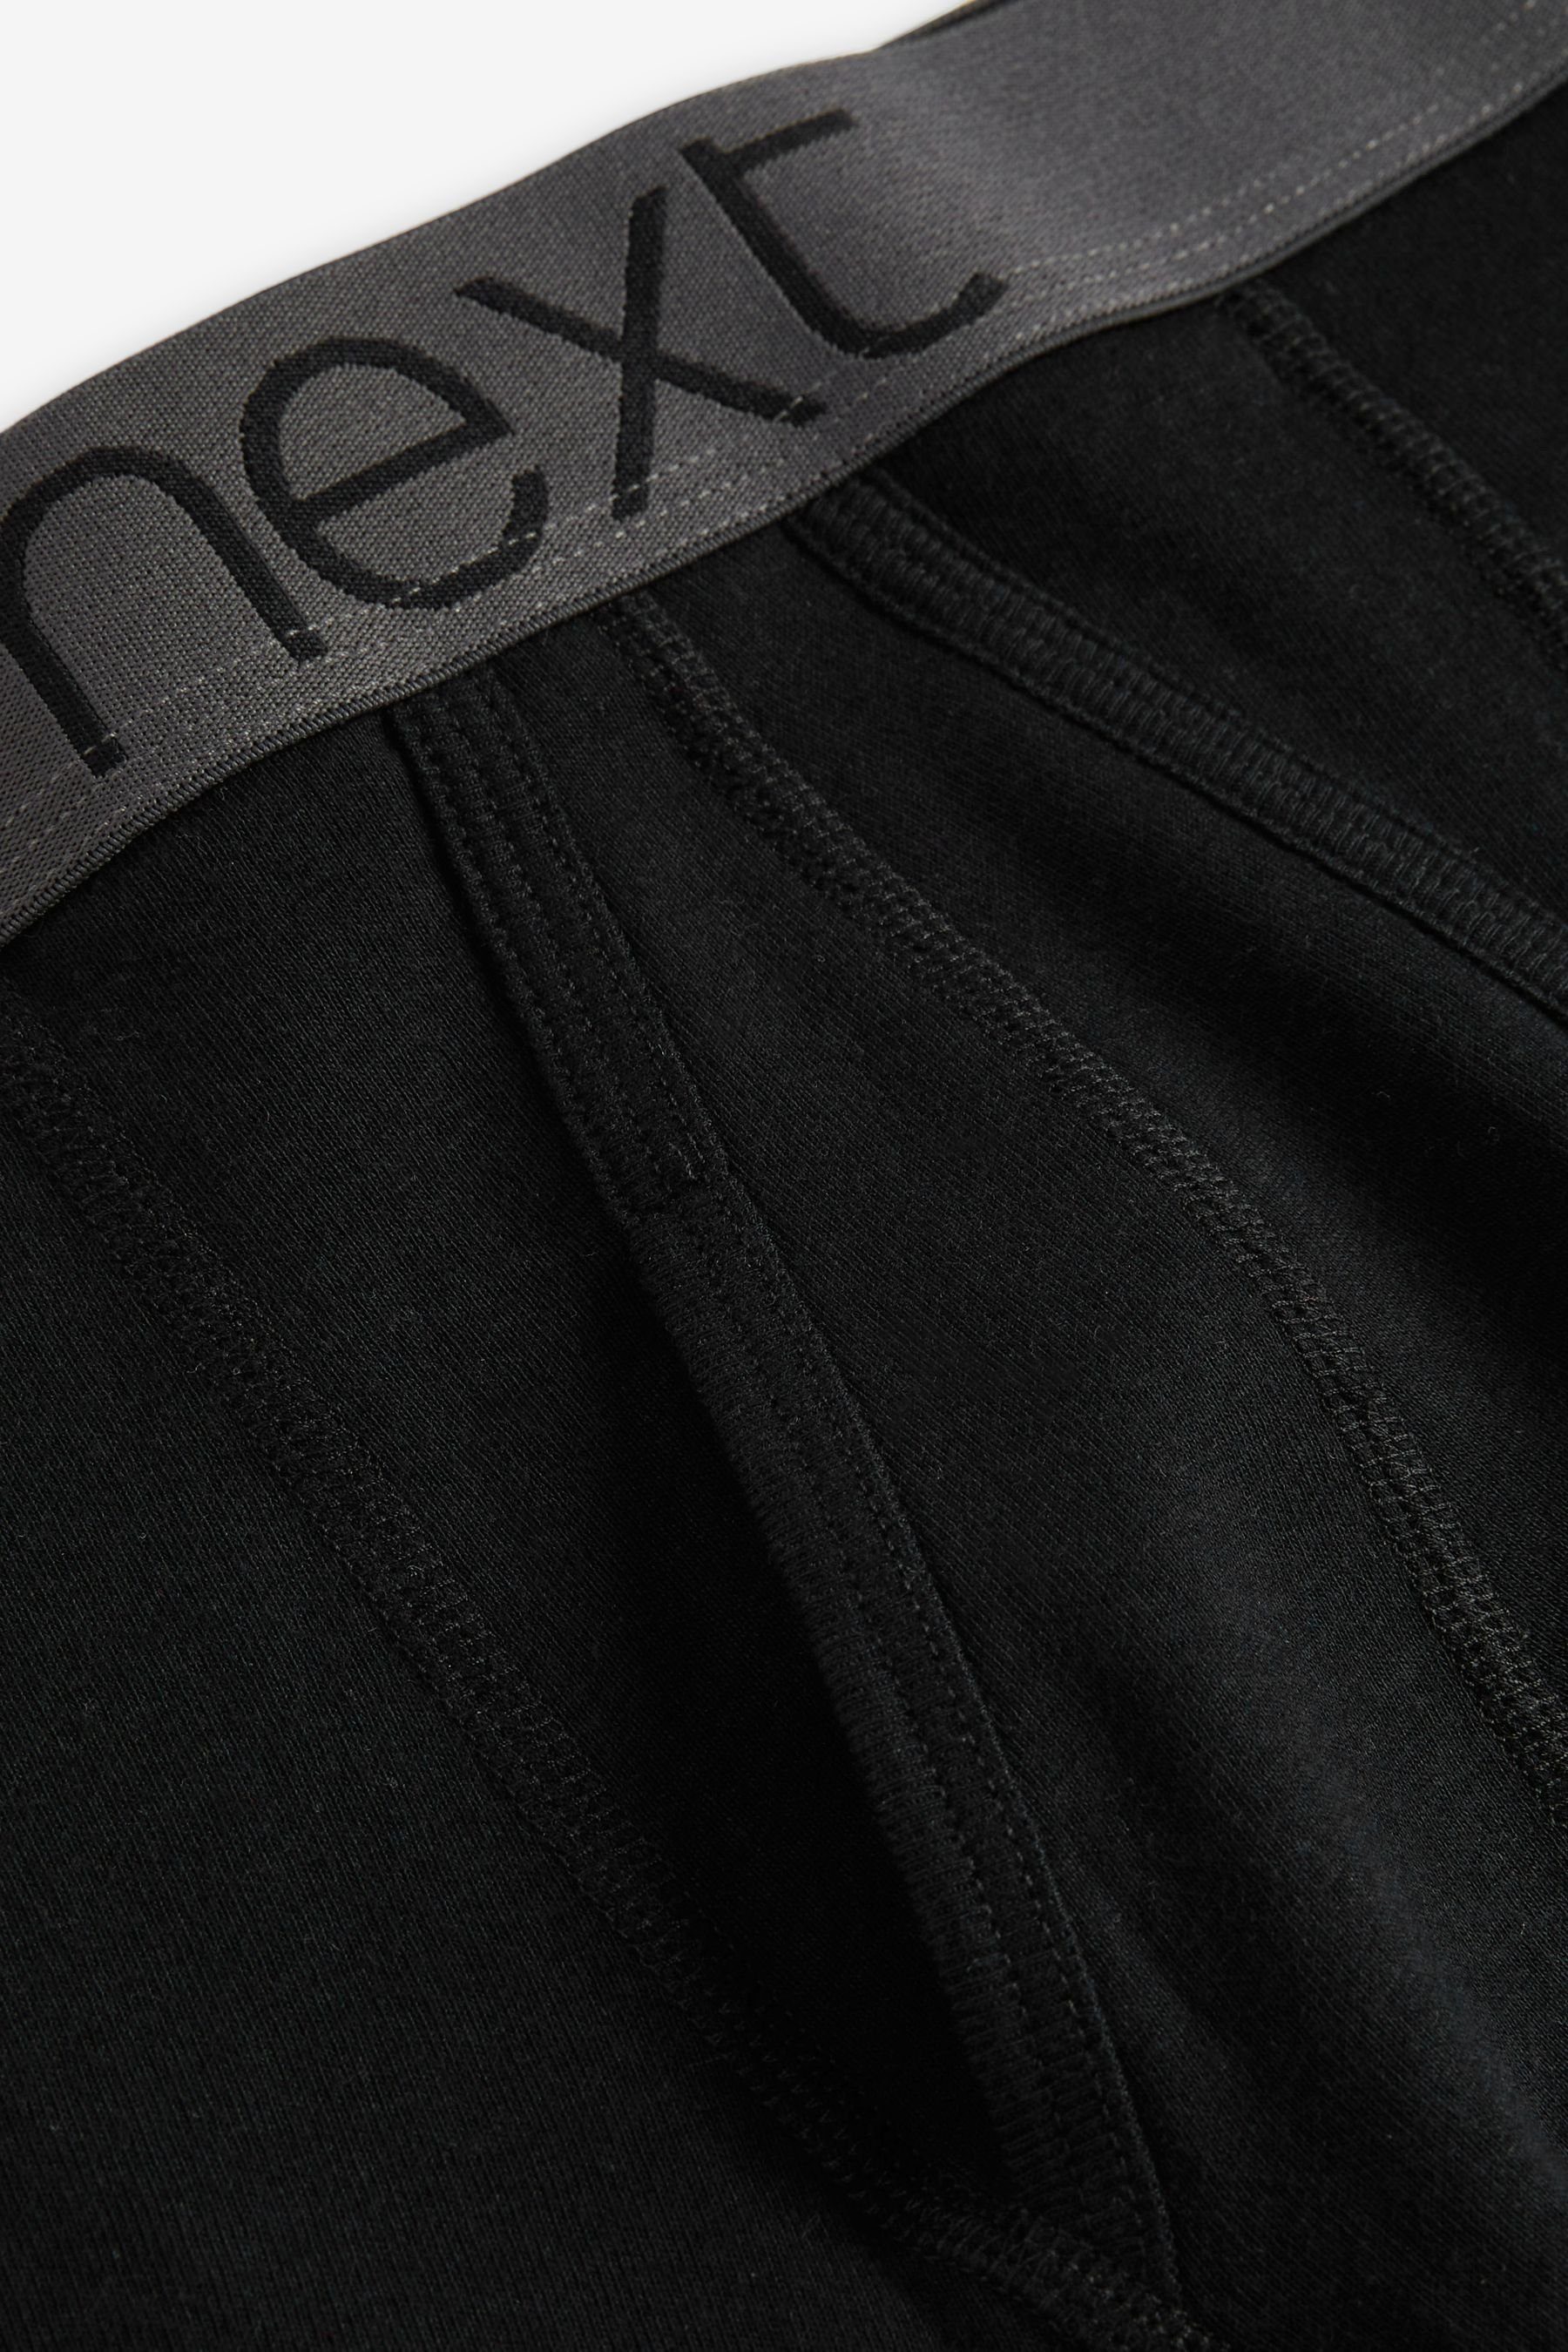 reiner Next x mit Unterhosen (10-St) aus Boxer A-Naht Baumwolle 10 Black